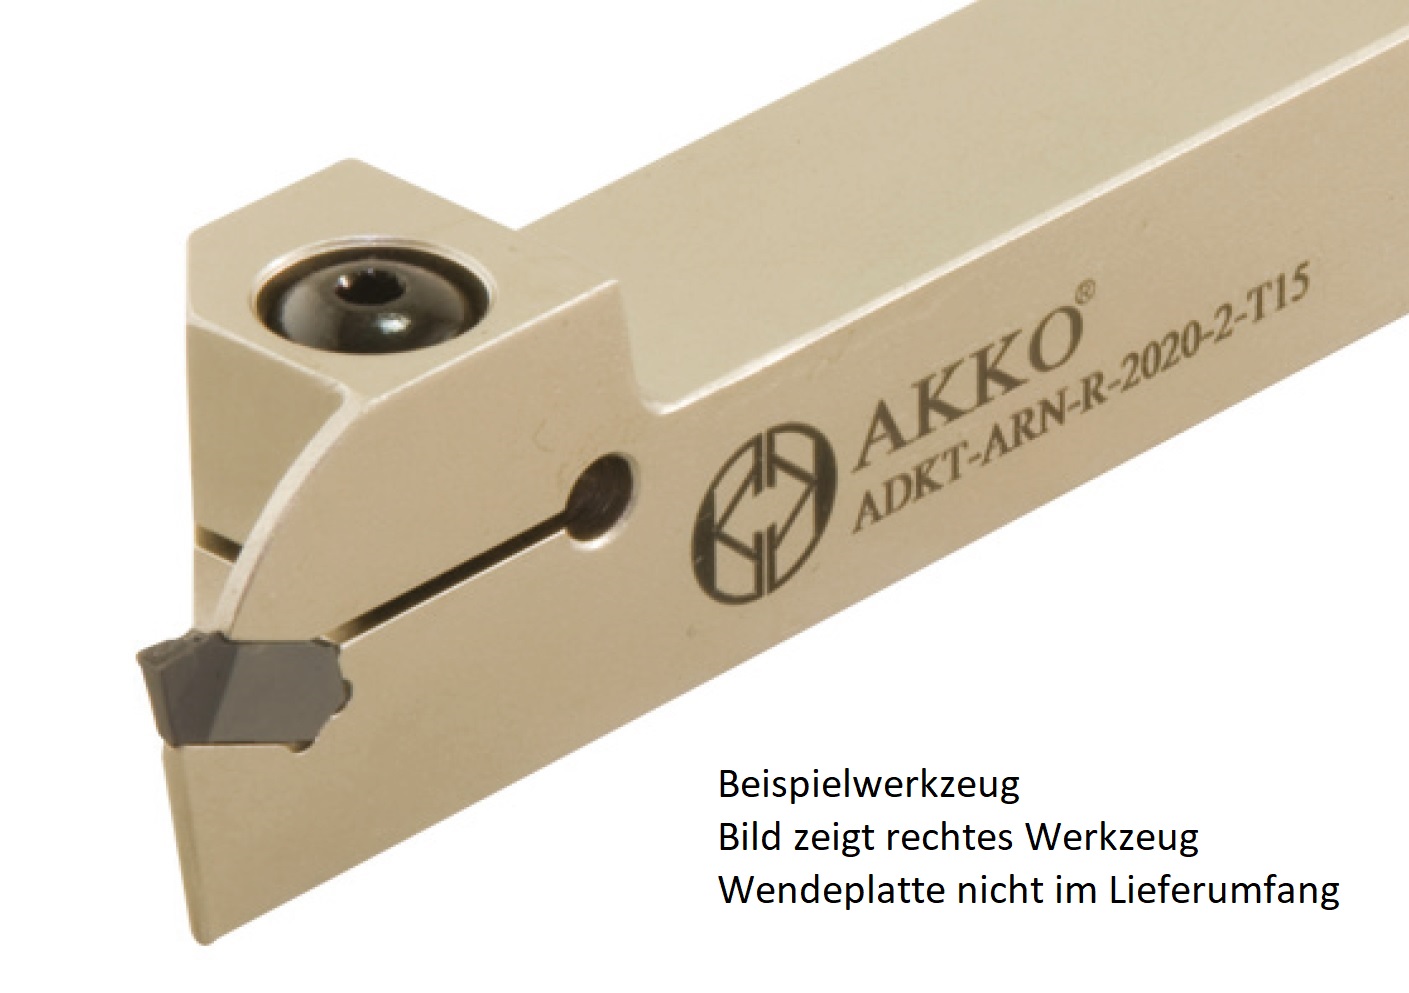 AKKO-Außen-Stechhalter, kompatibel mit Arno-Stechplatte LOMR.-3
links, Schaft 20 x 20 mm